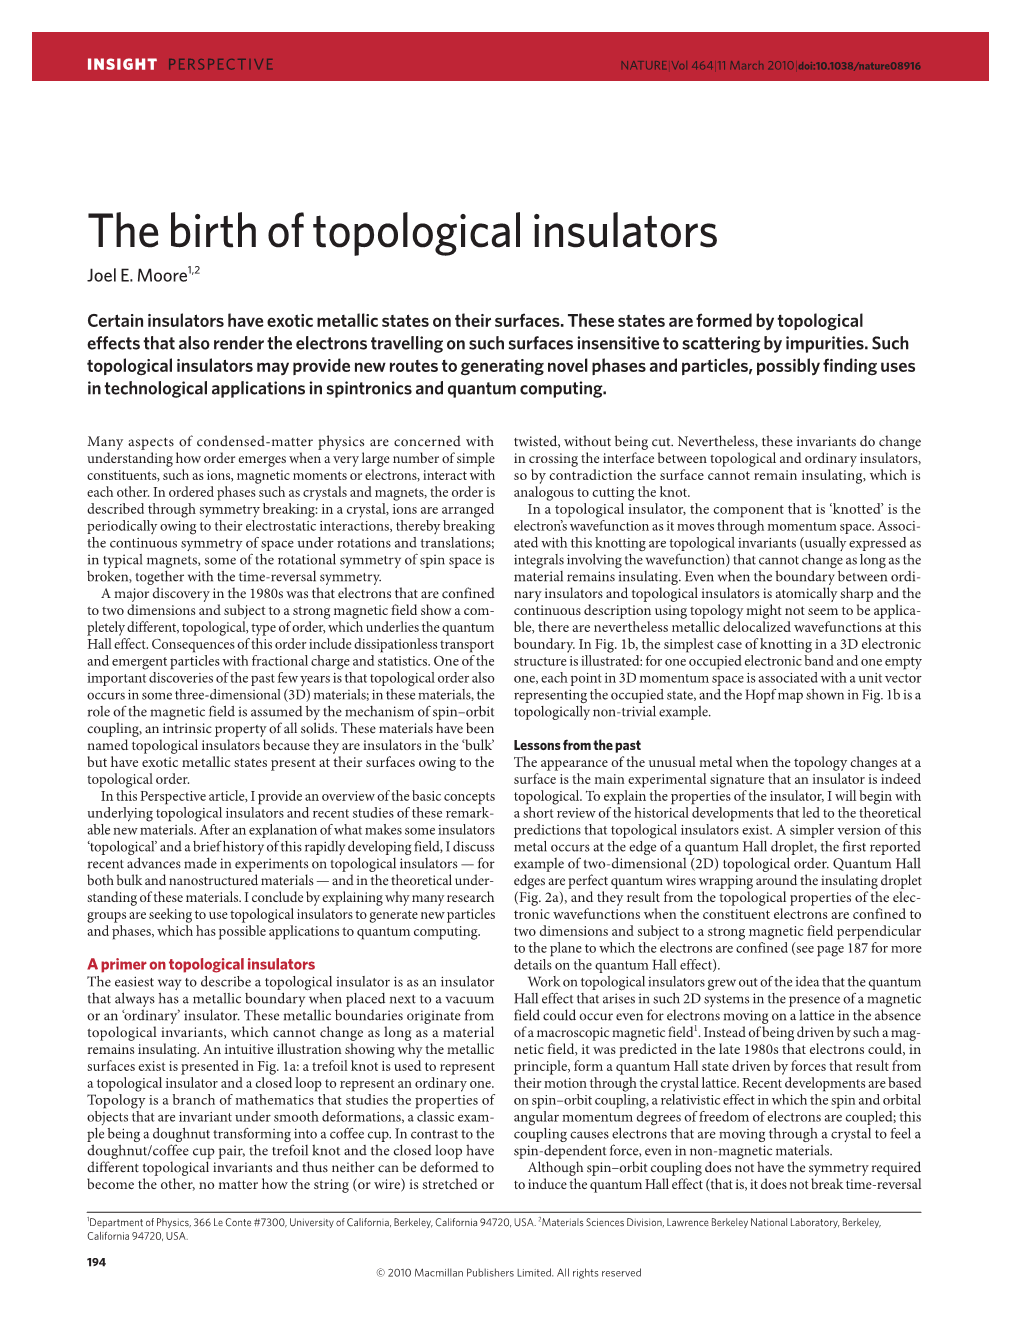 The Birth of Topological Insulators Joel E